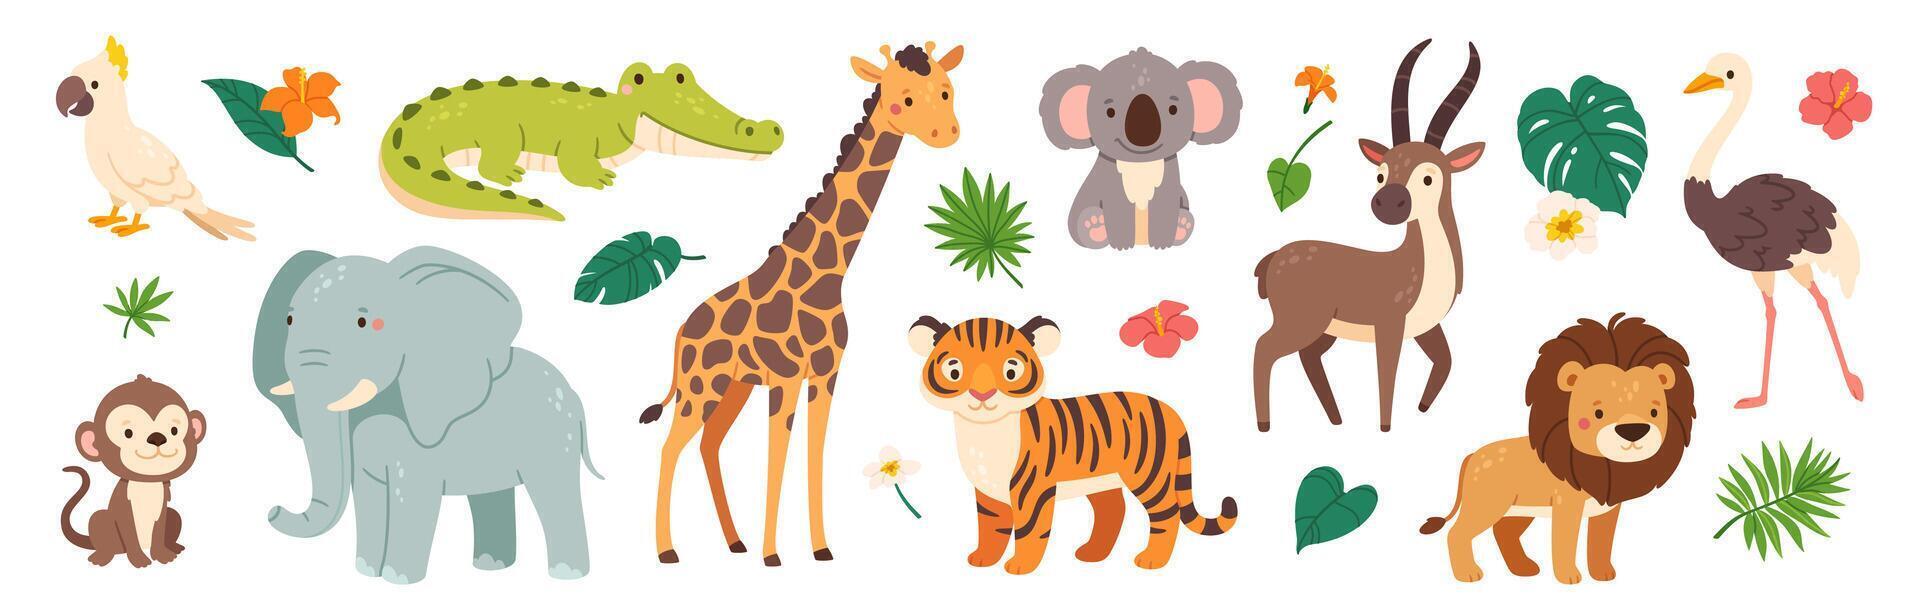 komisch Safari Tiere. süß Karikatur Kinder Tier Charakter. wild Tiger, Giraffe, glücklich Koala, afrikanisch Krokodil, Urwald Affe. Urwald Pflanze und dekorativ Elemente. Sammlung vektor